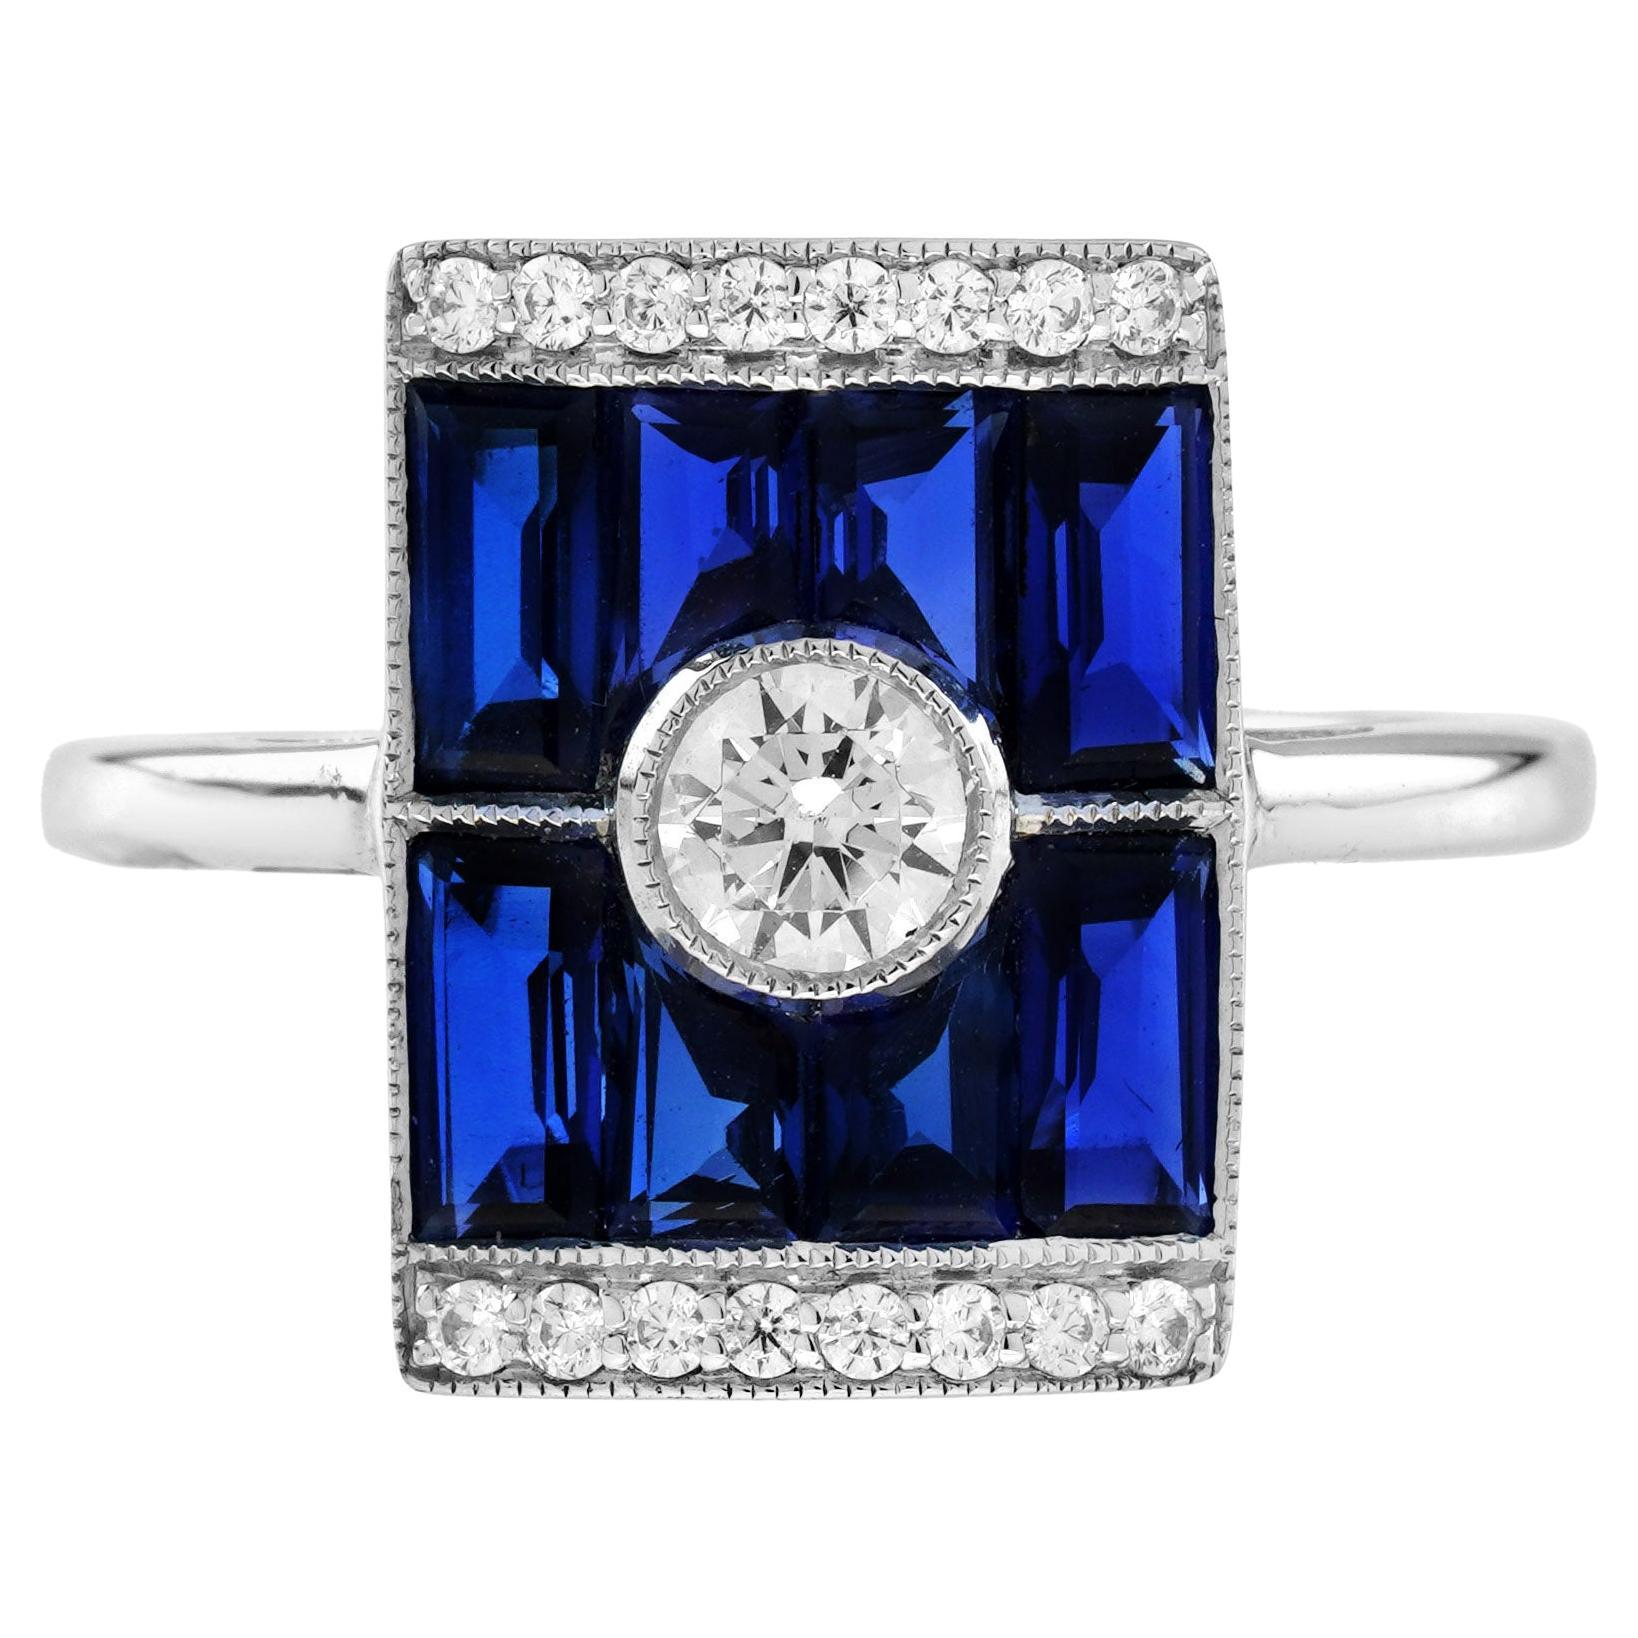 Bague rectangulaire de style Art déco en or blanc 18 carats avec diamants et saphirs bleus